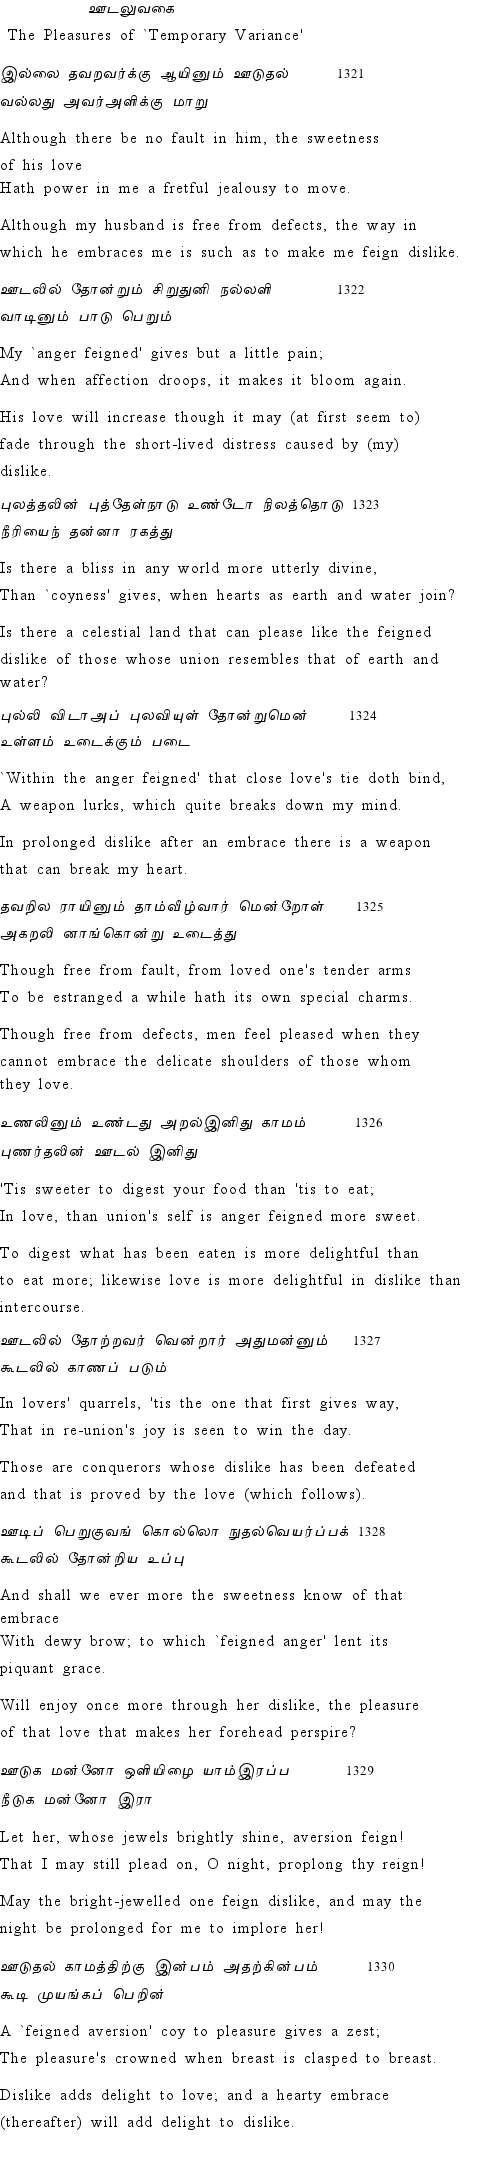 Text of Adhikaram 133